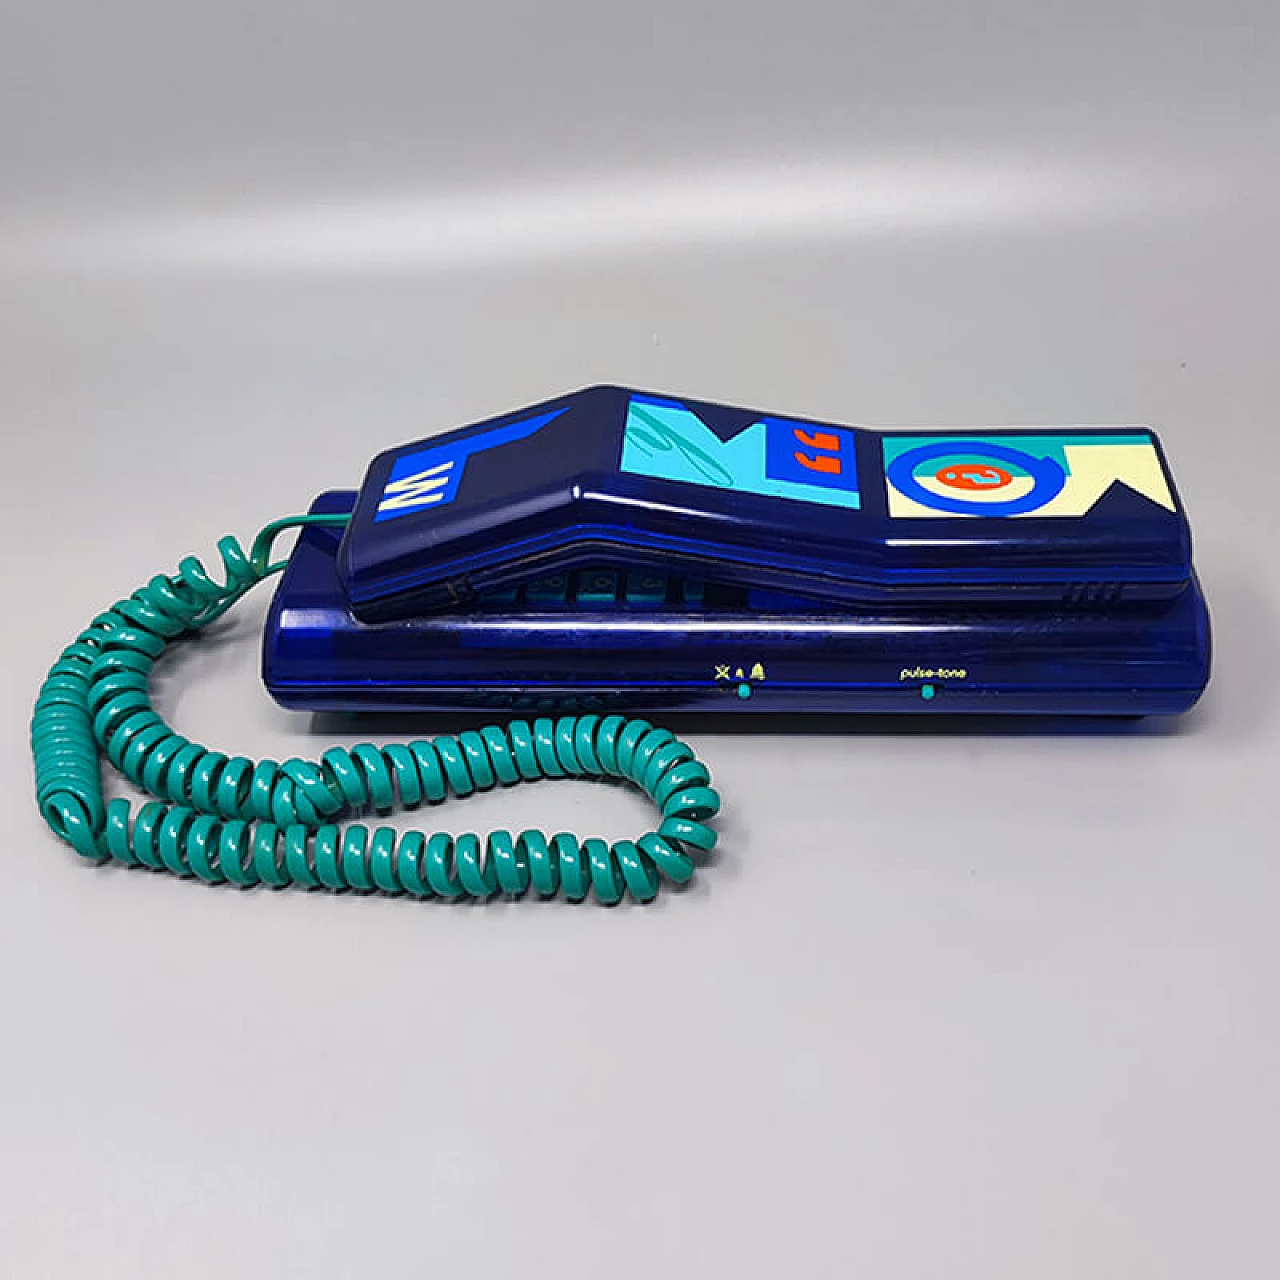 Telefono Swatch Twin Deluxe blu in stile Memphis, anni '80 2